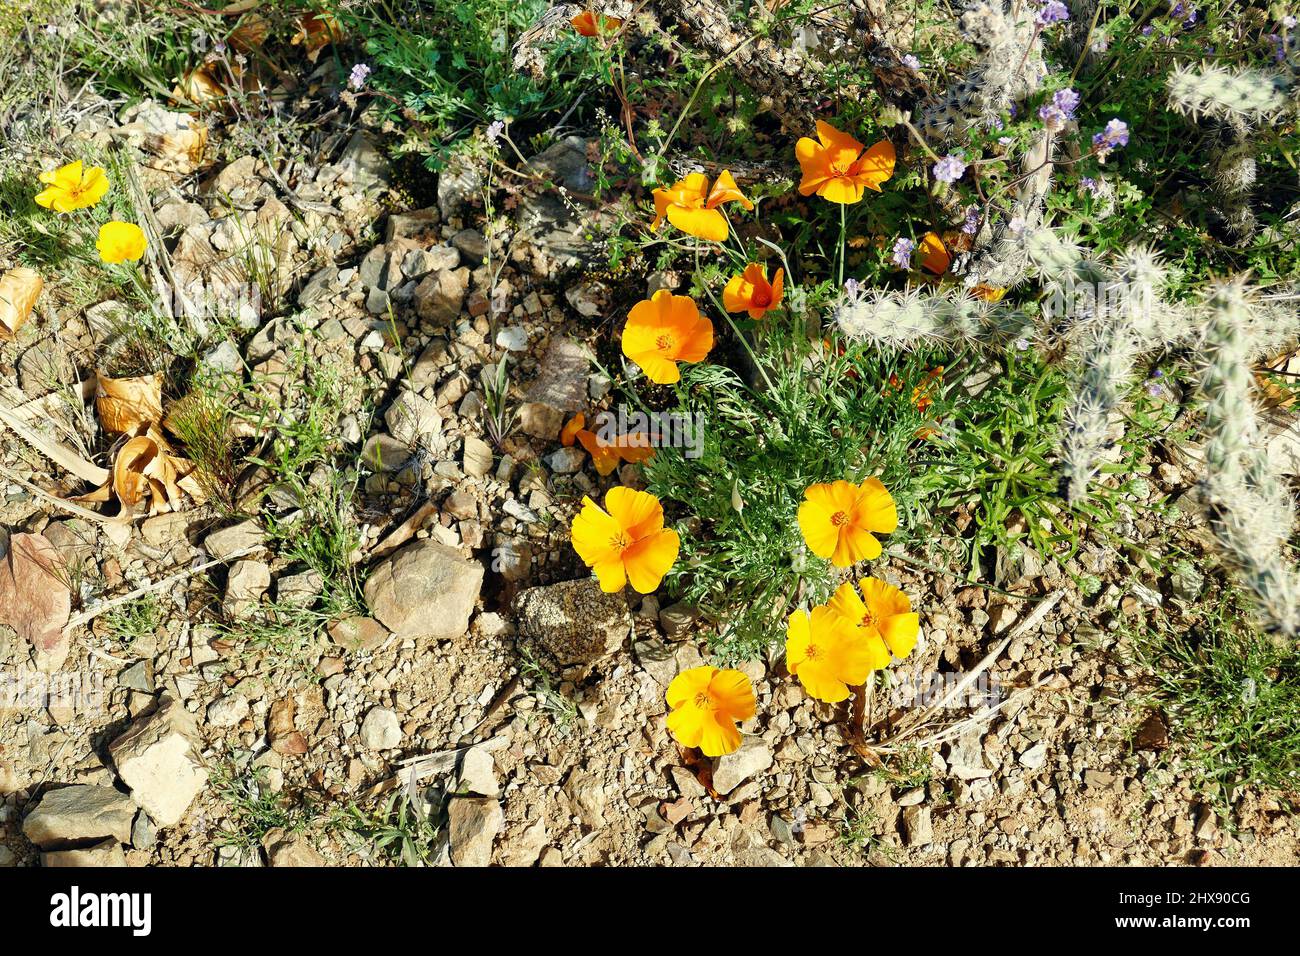 Les coquelicots de Californie (Eschscholzia californica) fleurissent après des averses de pluie dans le désert aride de de Sonoran, Arizona, Etats-Unis Banque D'Images